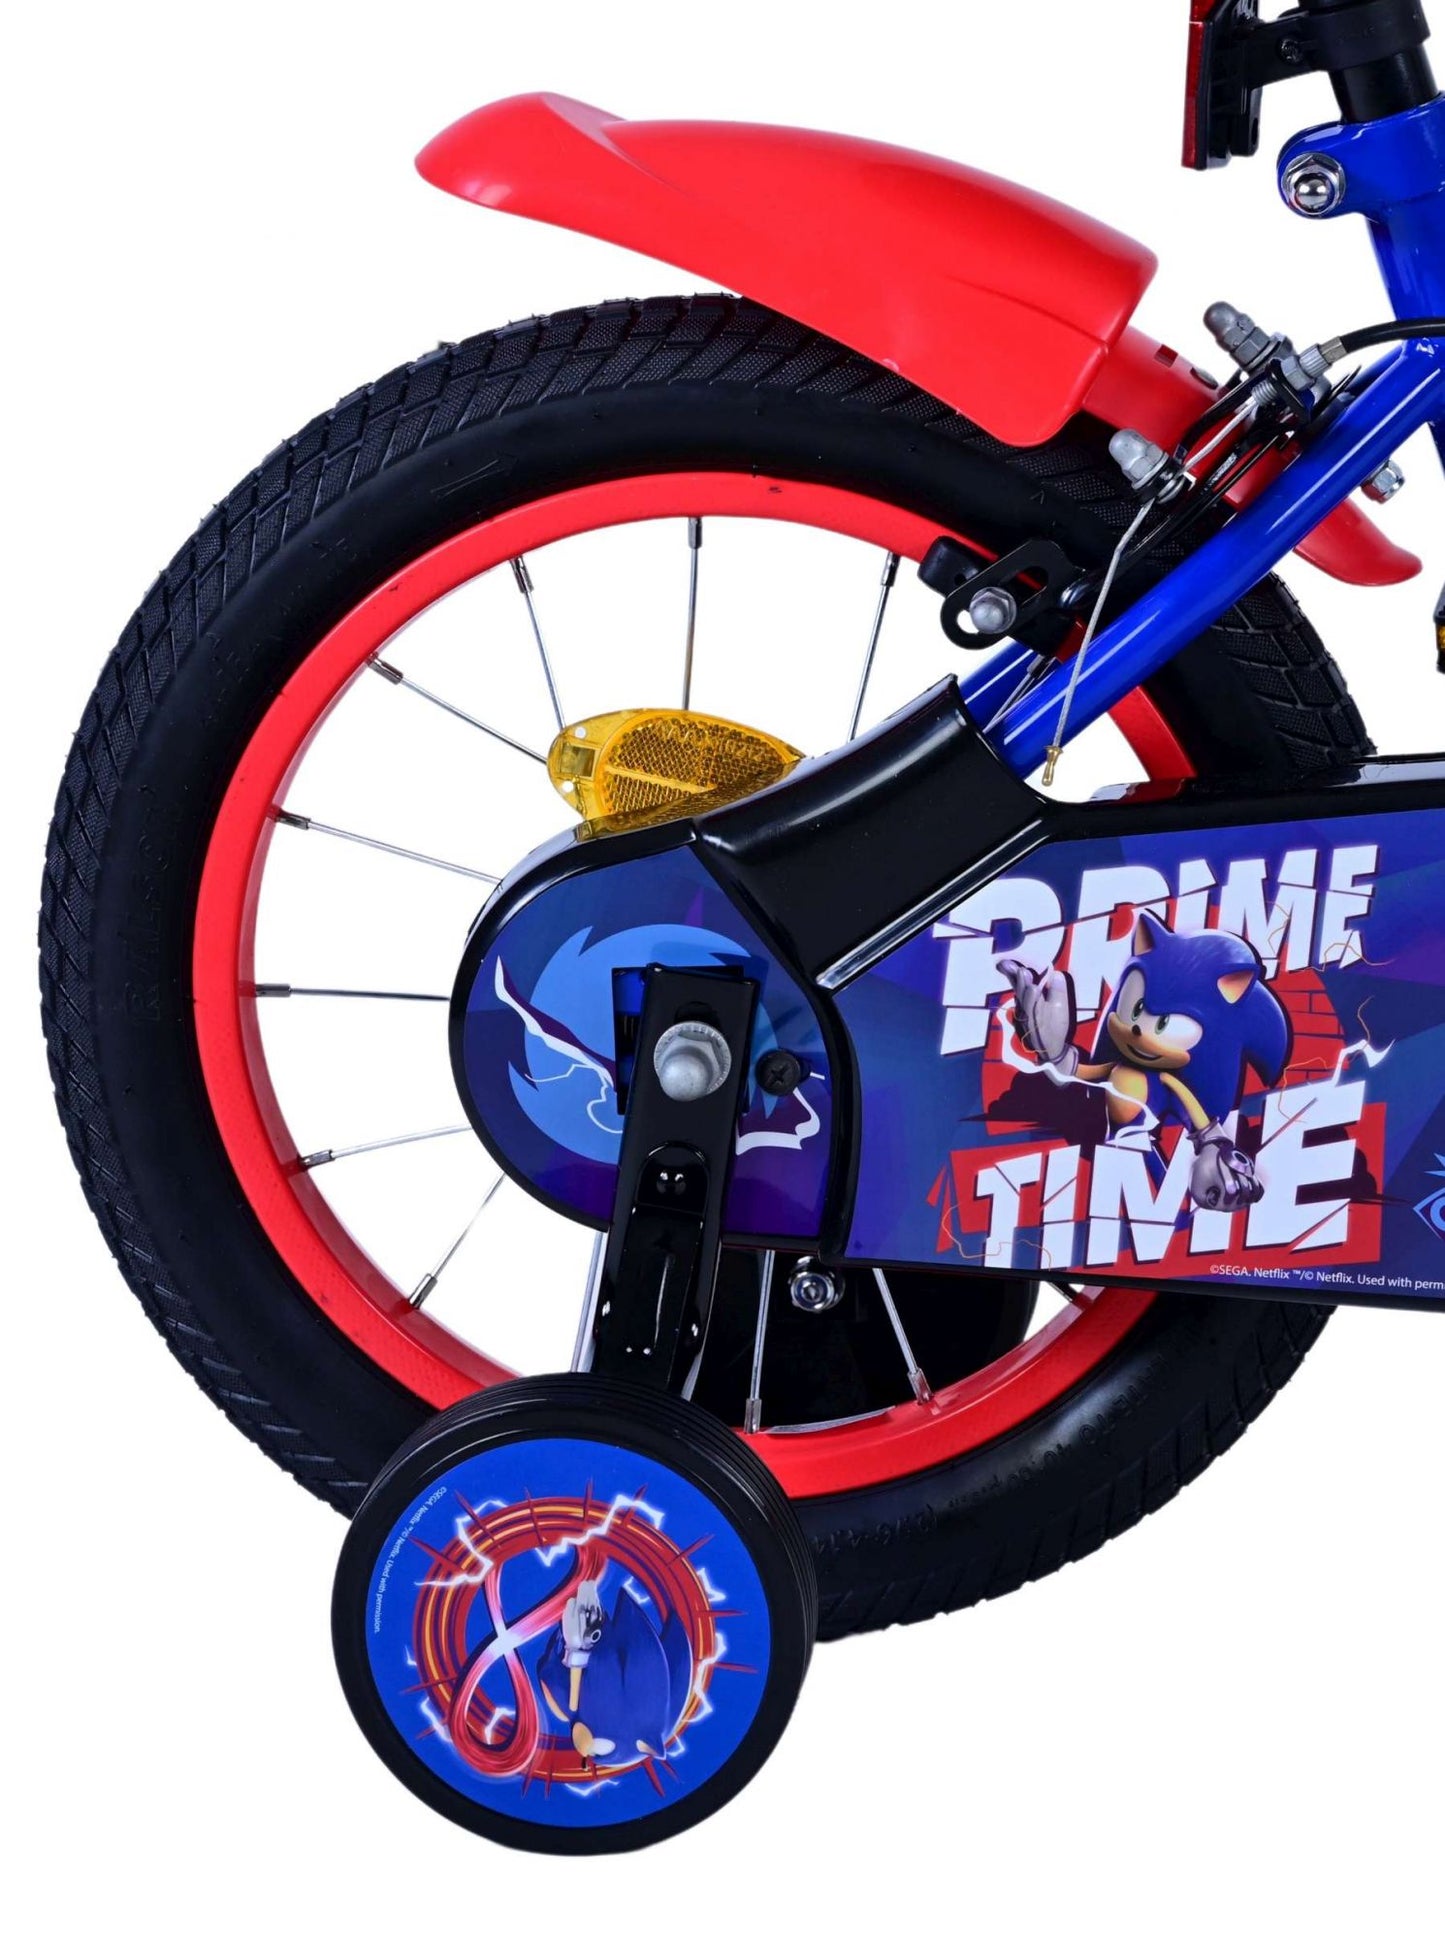 Sonic Prime Prime Children's Bike Boys de 14 pulgadas rojo de dos frenos de manos